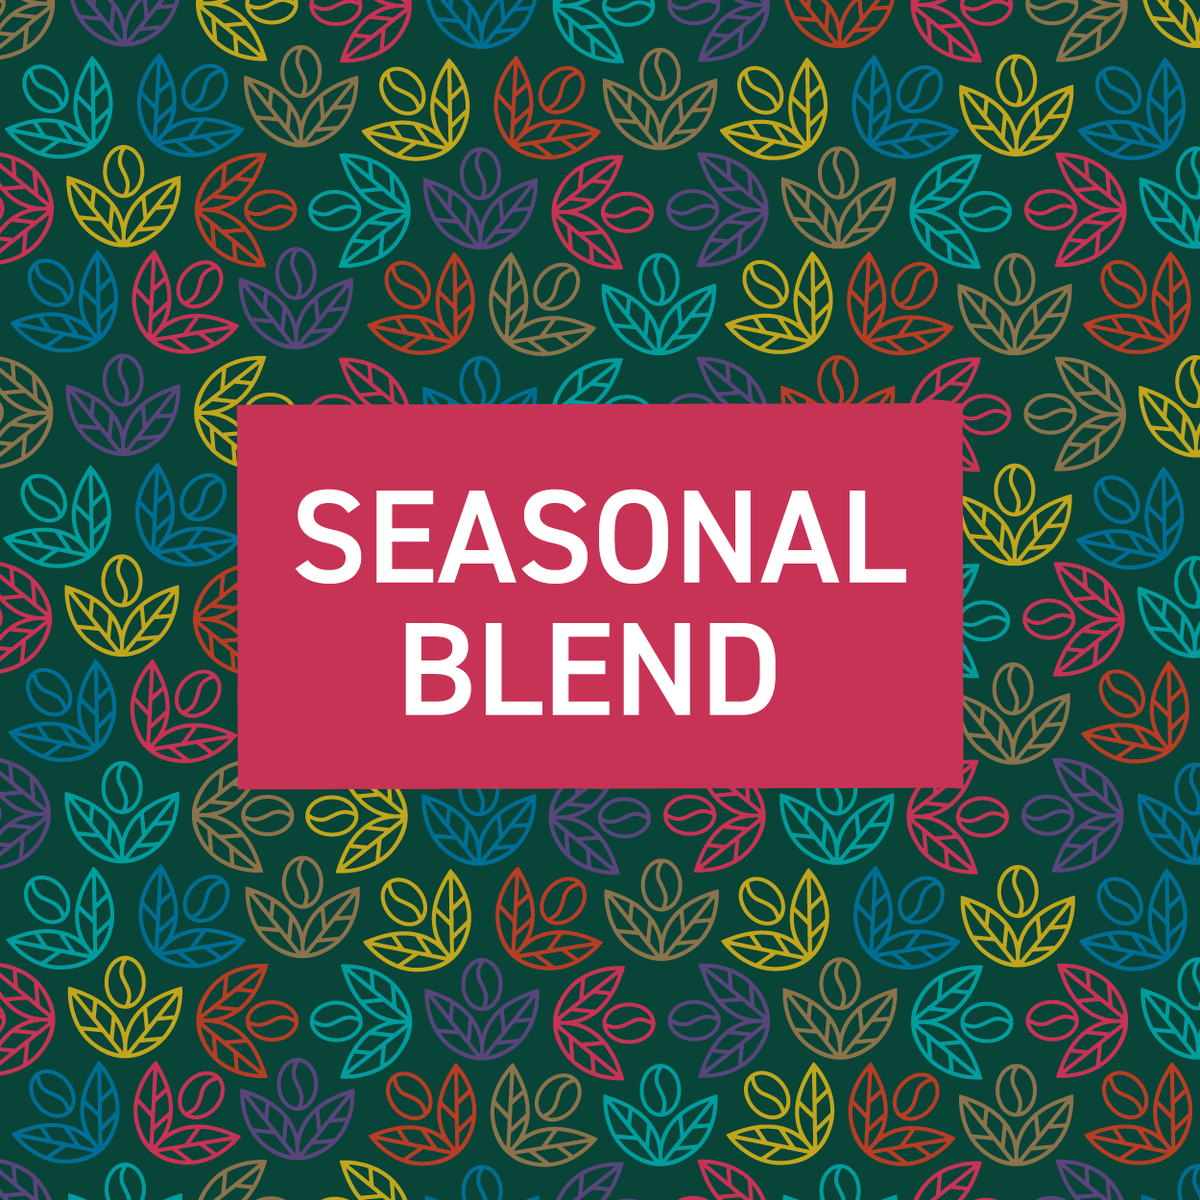 Seasonal Blend - Pura Vida